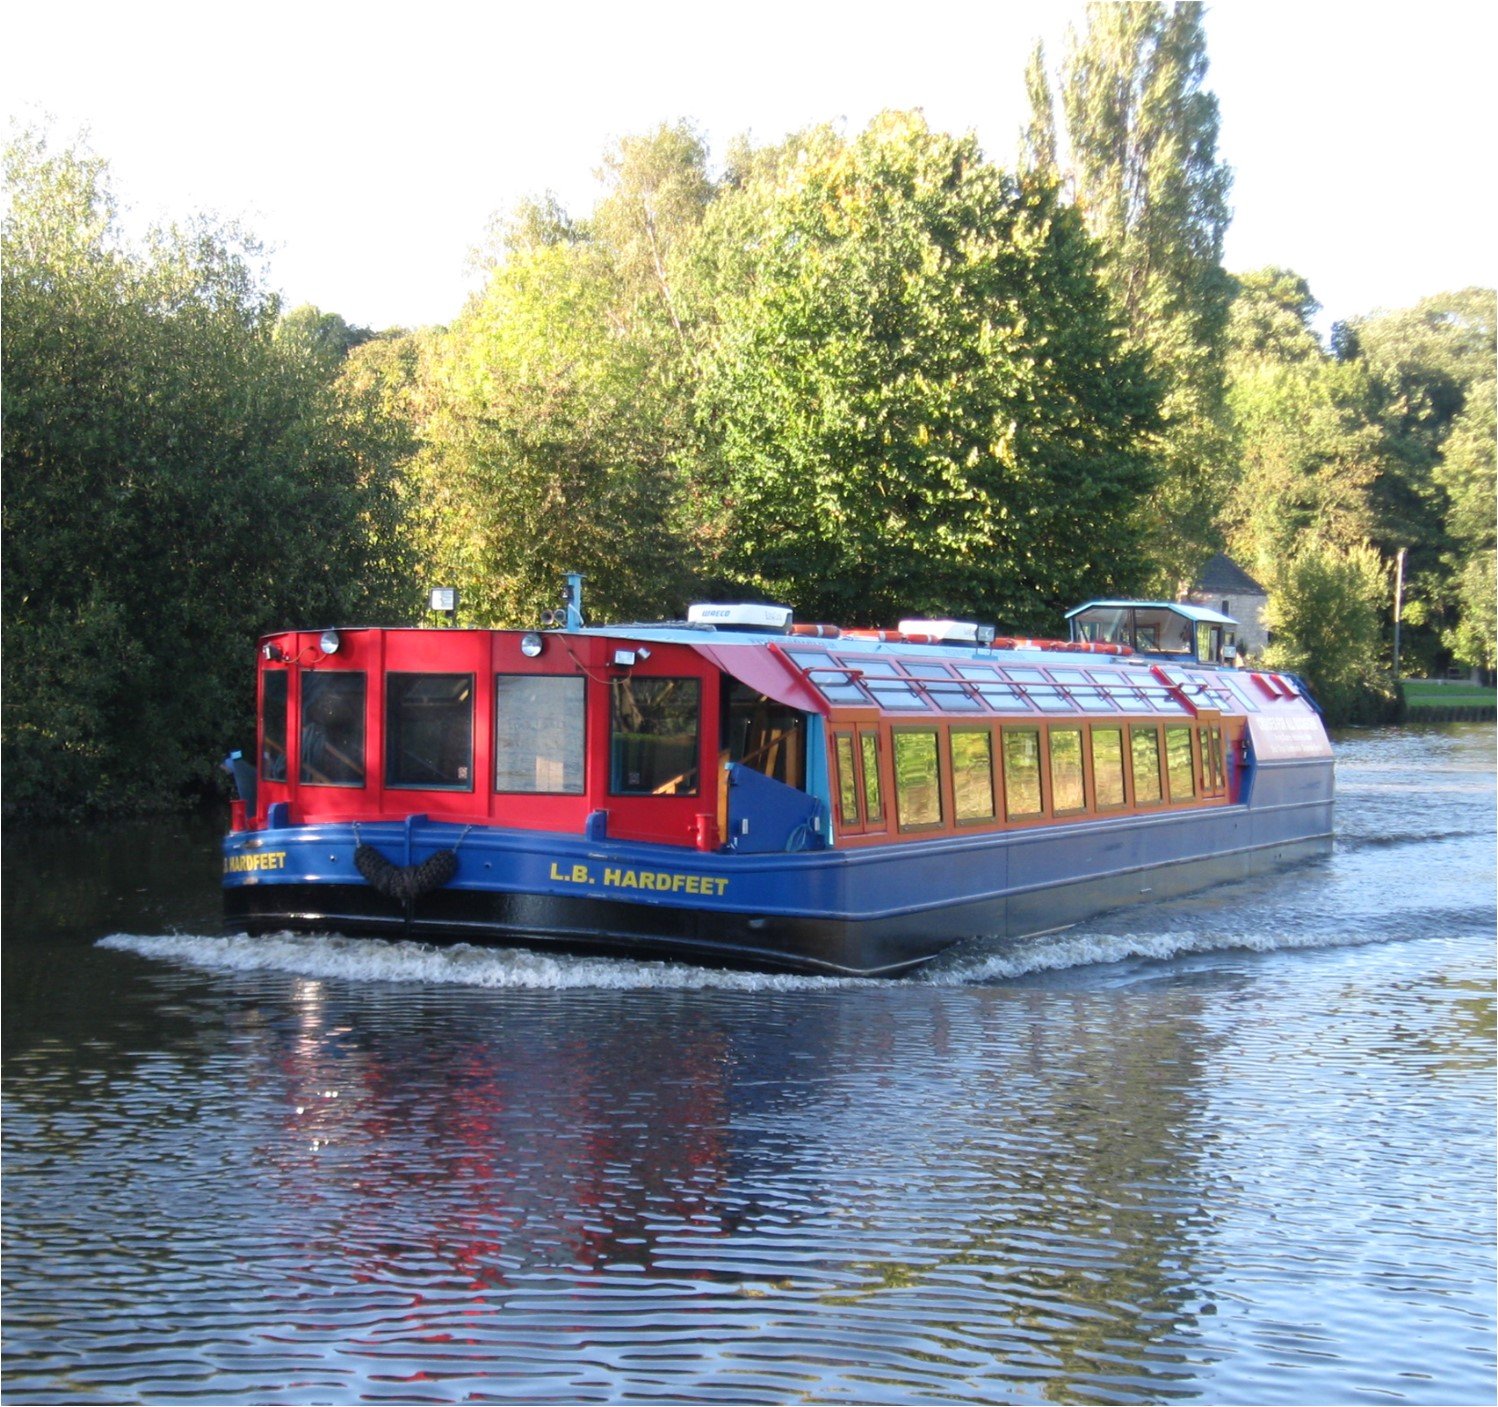 (c) Sheffieldboats.co.uk